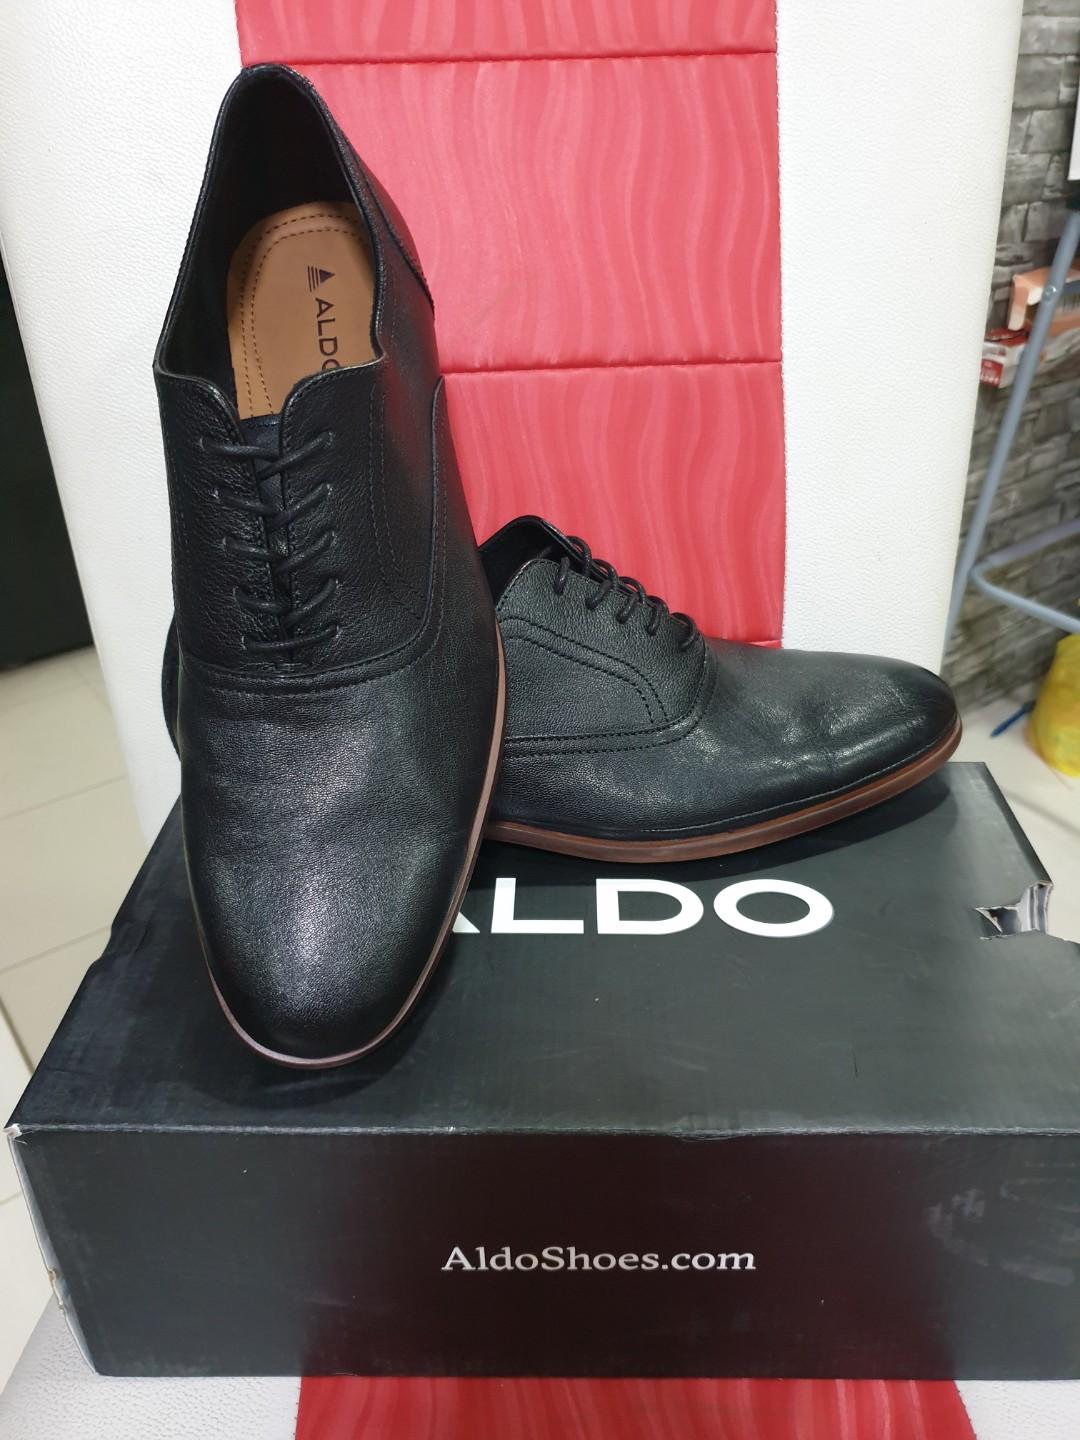 aldo smart shoes